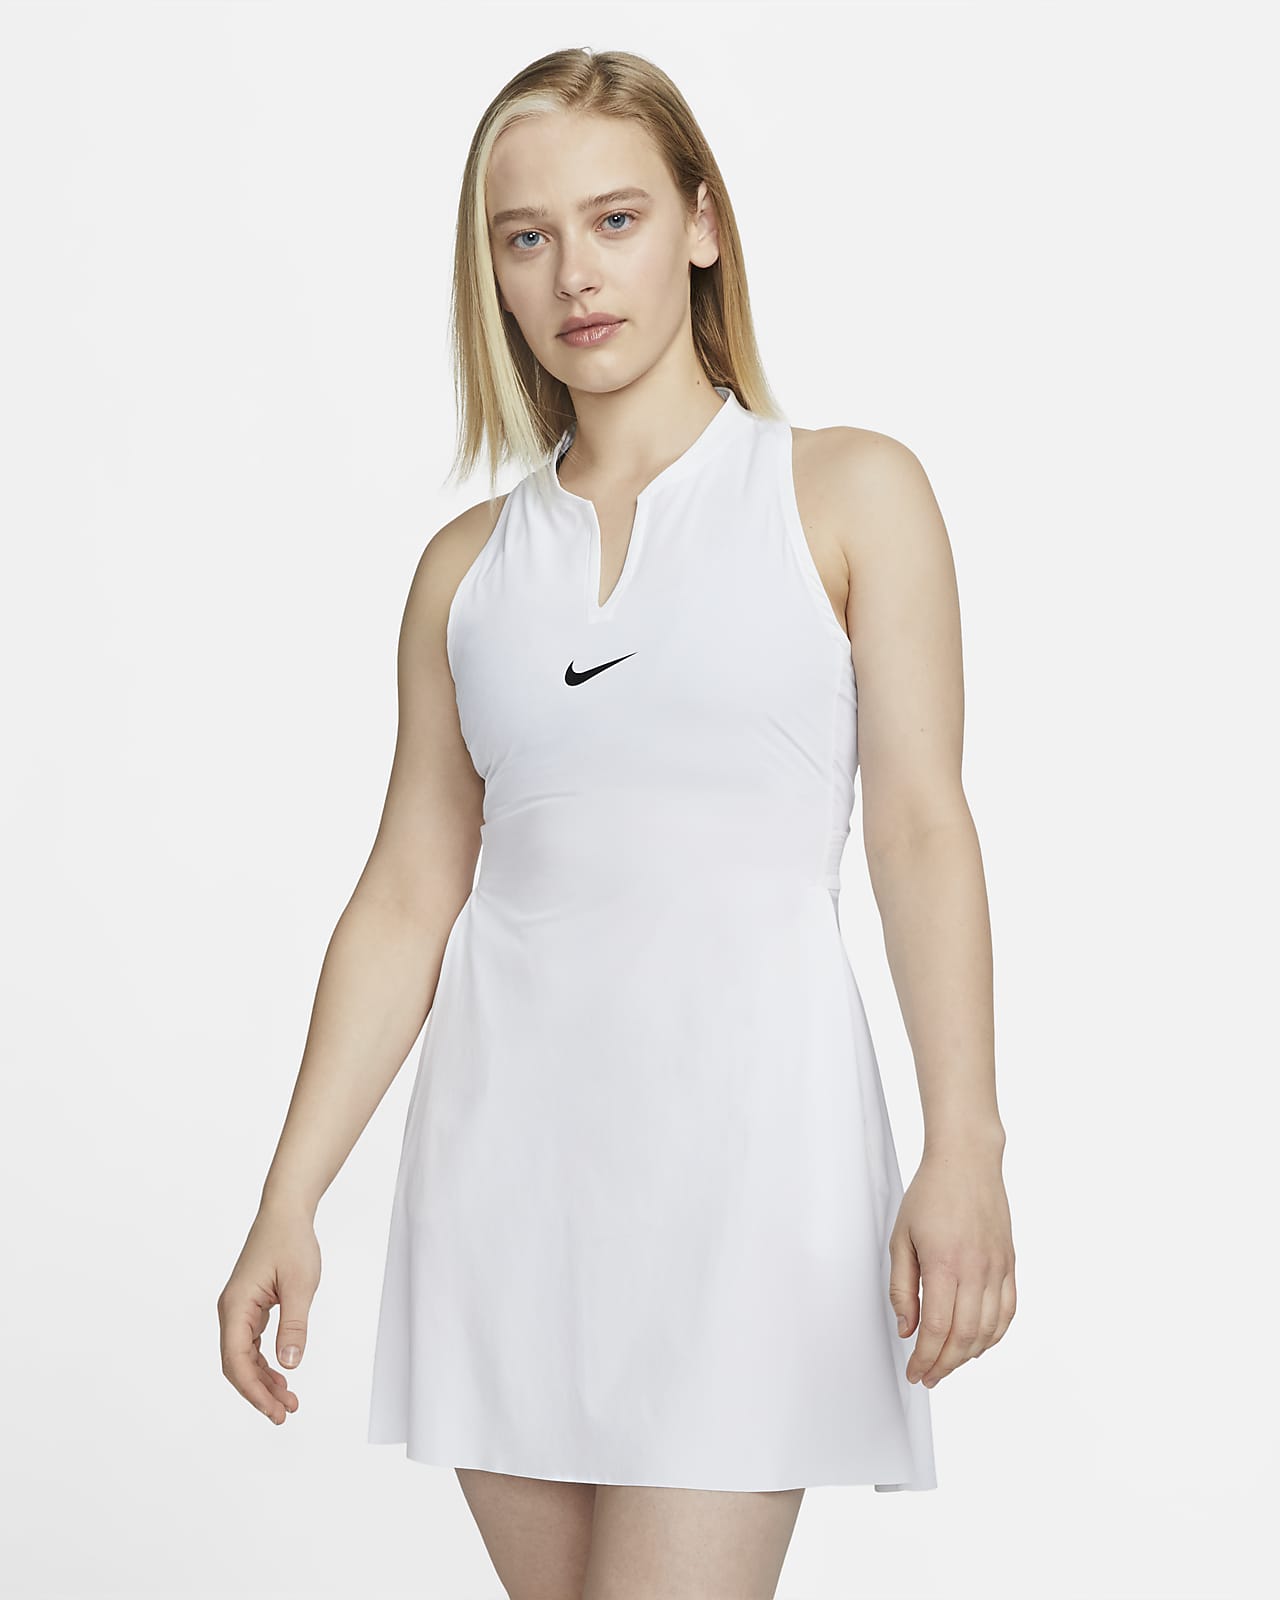 Falda plisada mujer Nike Basic Advantage - Running Warehouse Europe